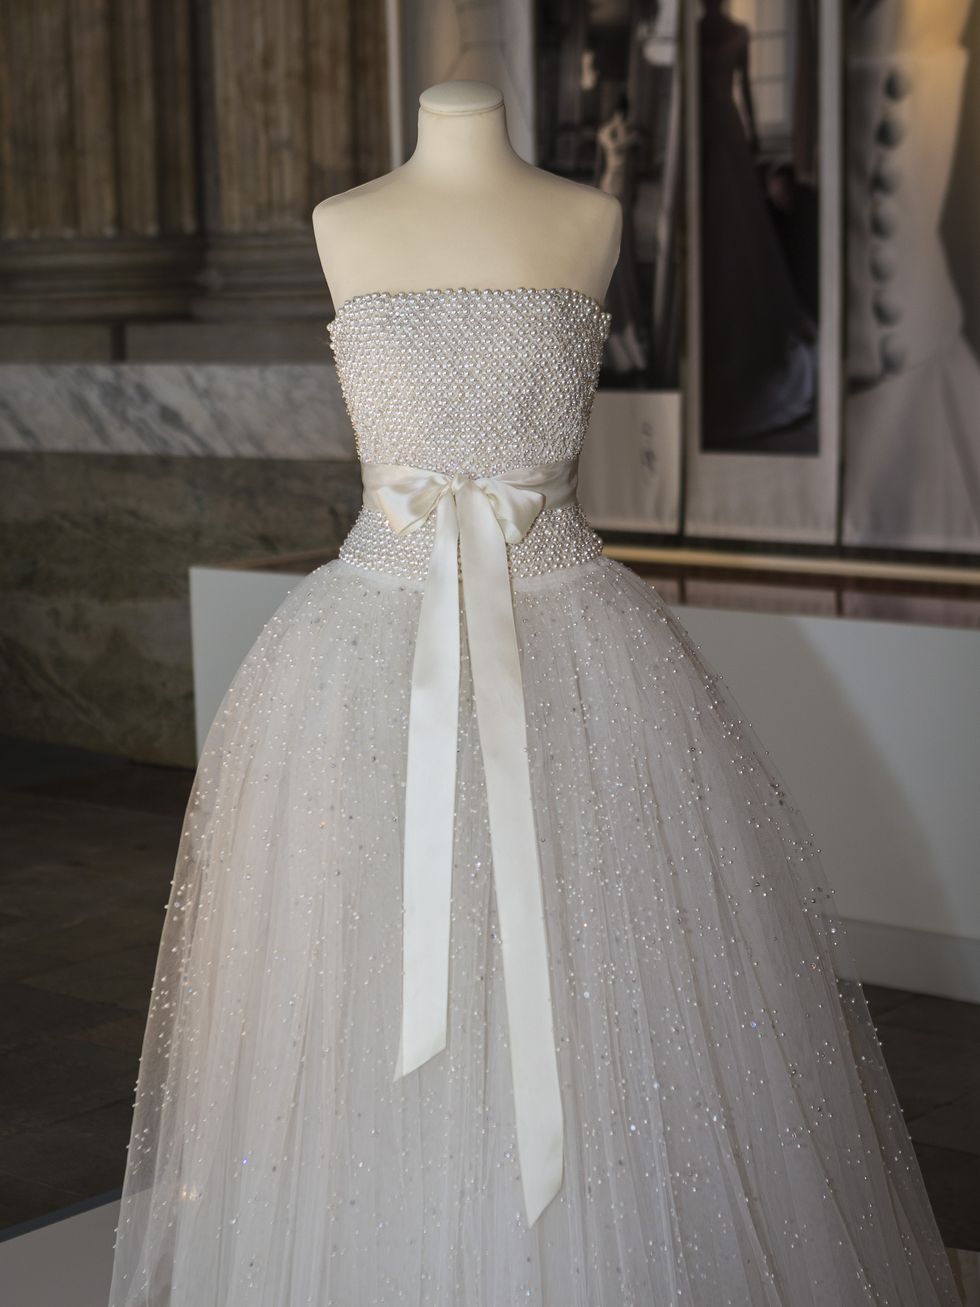 swedish royal wedding dresses exhibition at royal palace